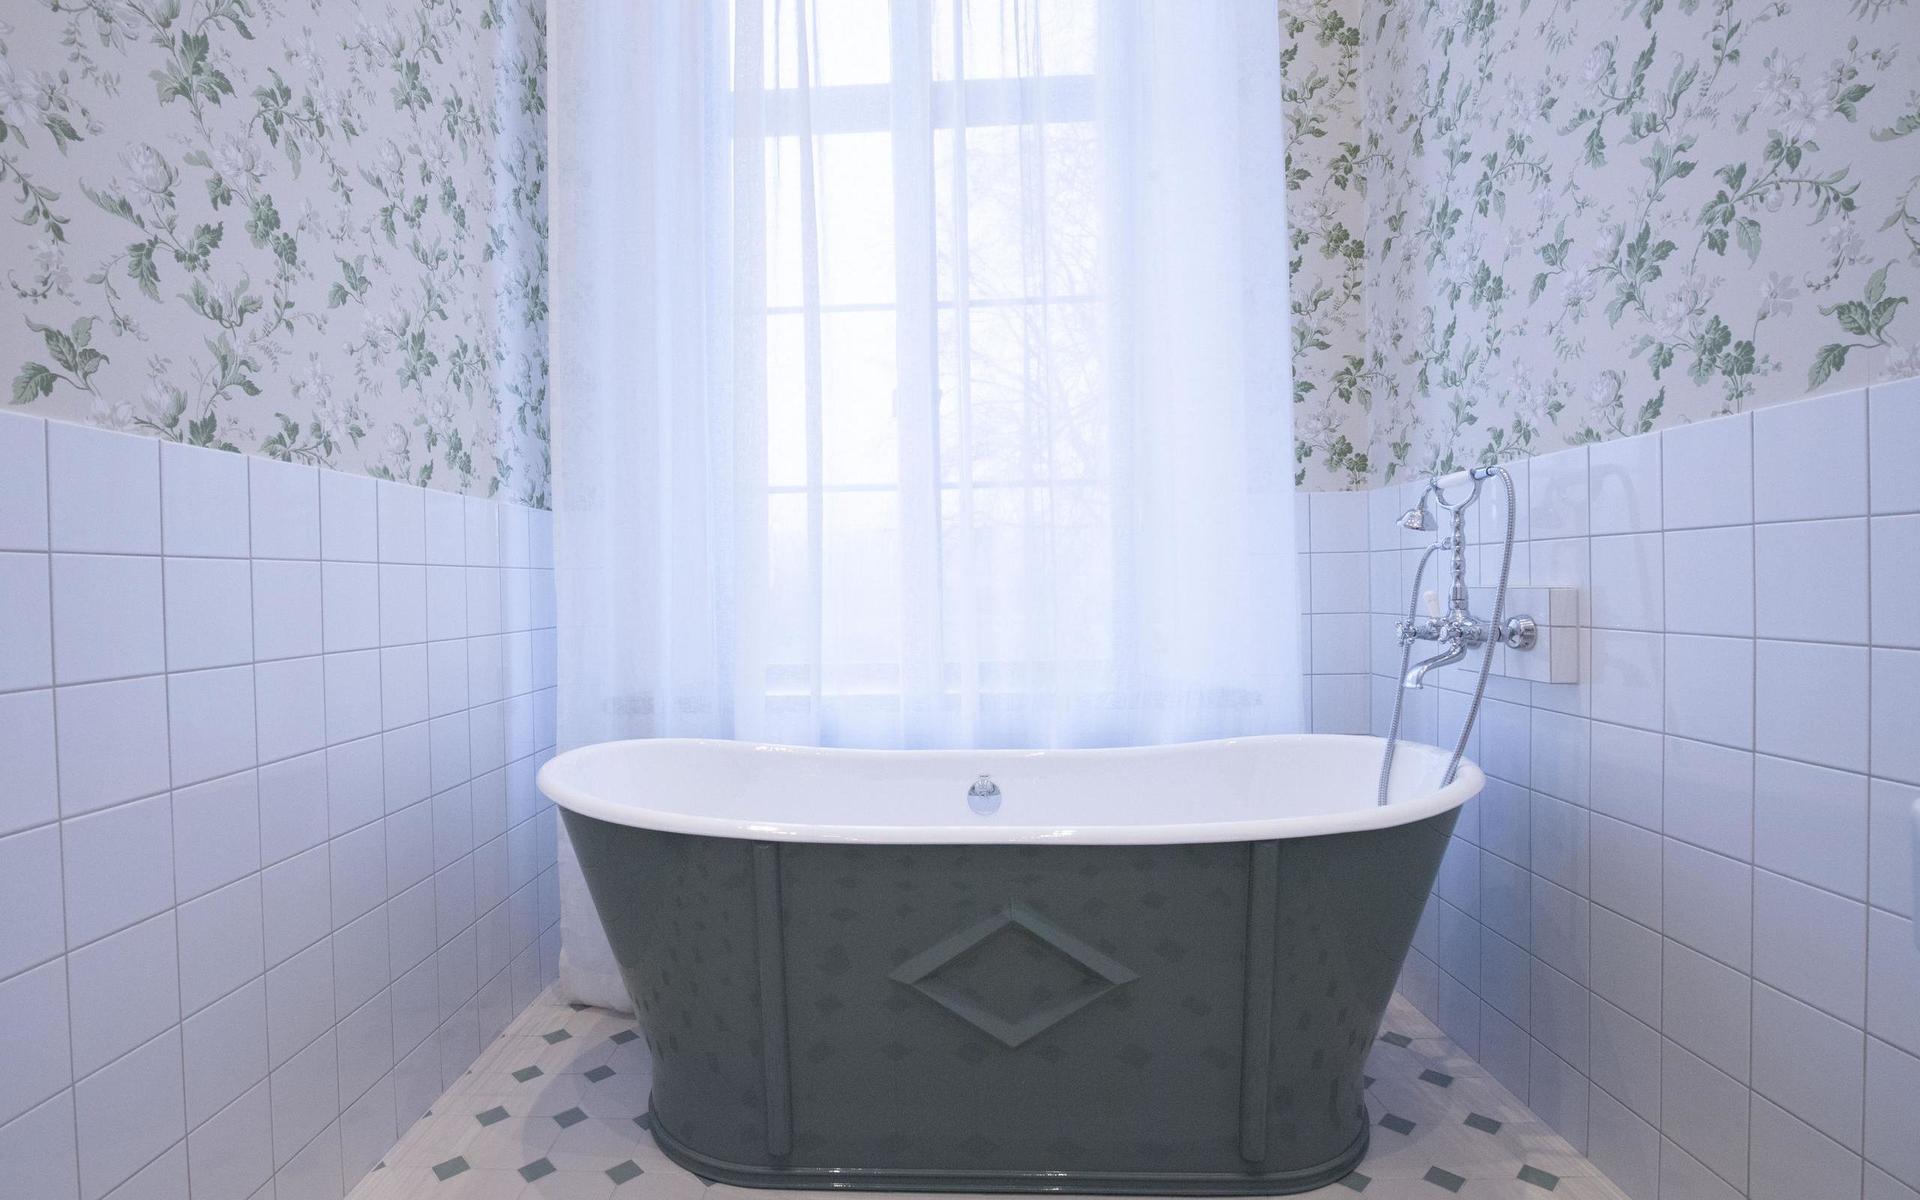 Parets gröna gjutgärnsbadkar som kan hålla vattnet varmt i många timmar.